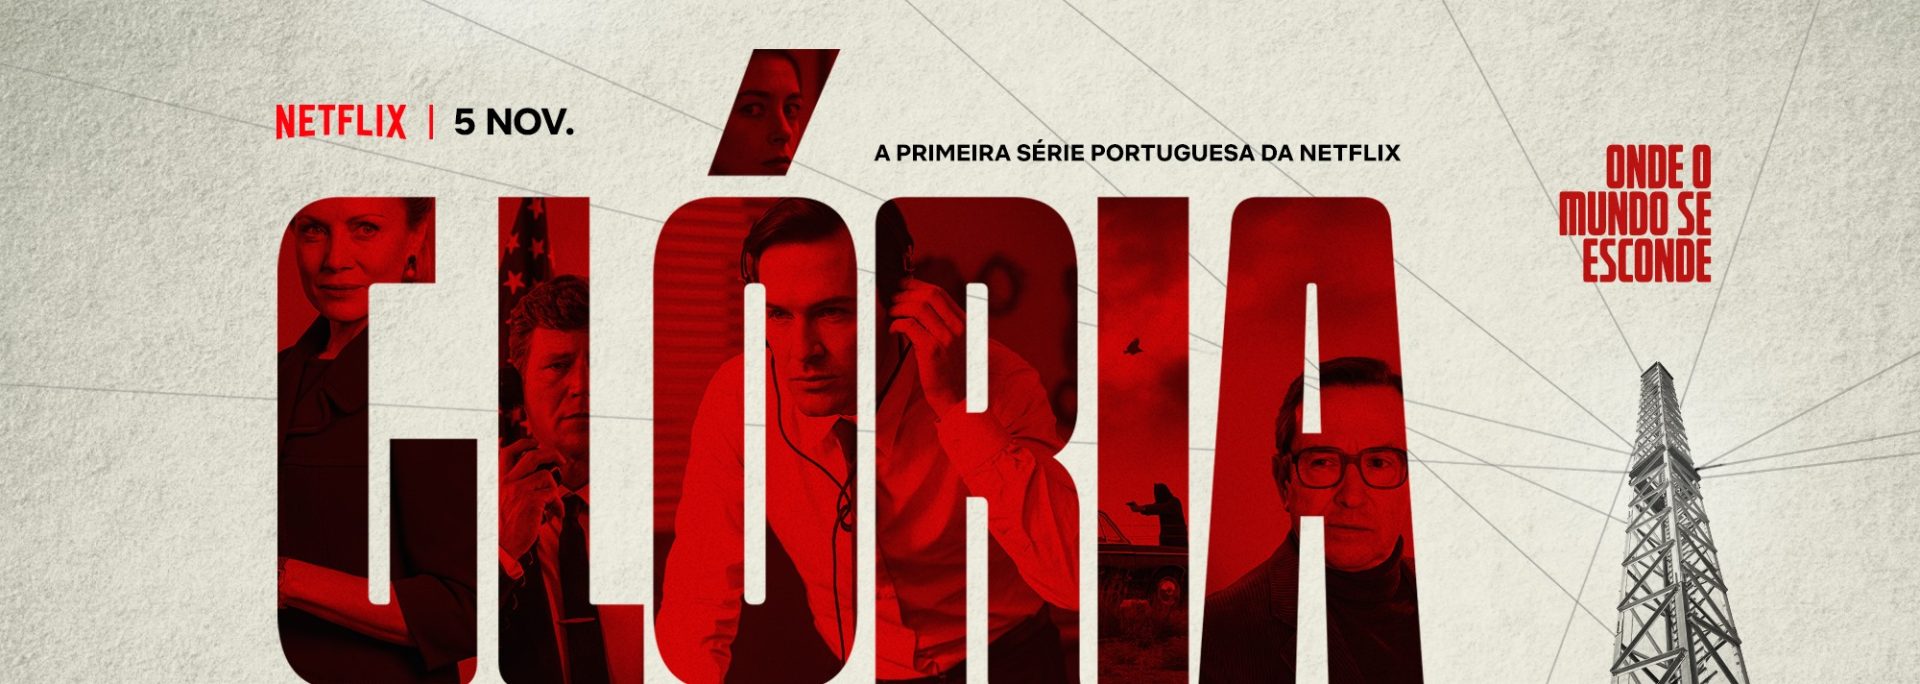 Série “Glória”, a primeira produção portuguesa para a Netflix, estreia esta sexta-feira